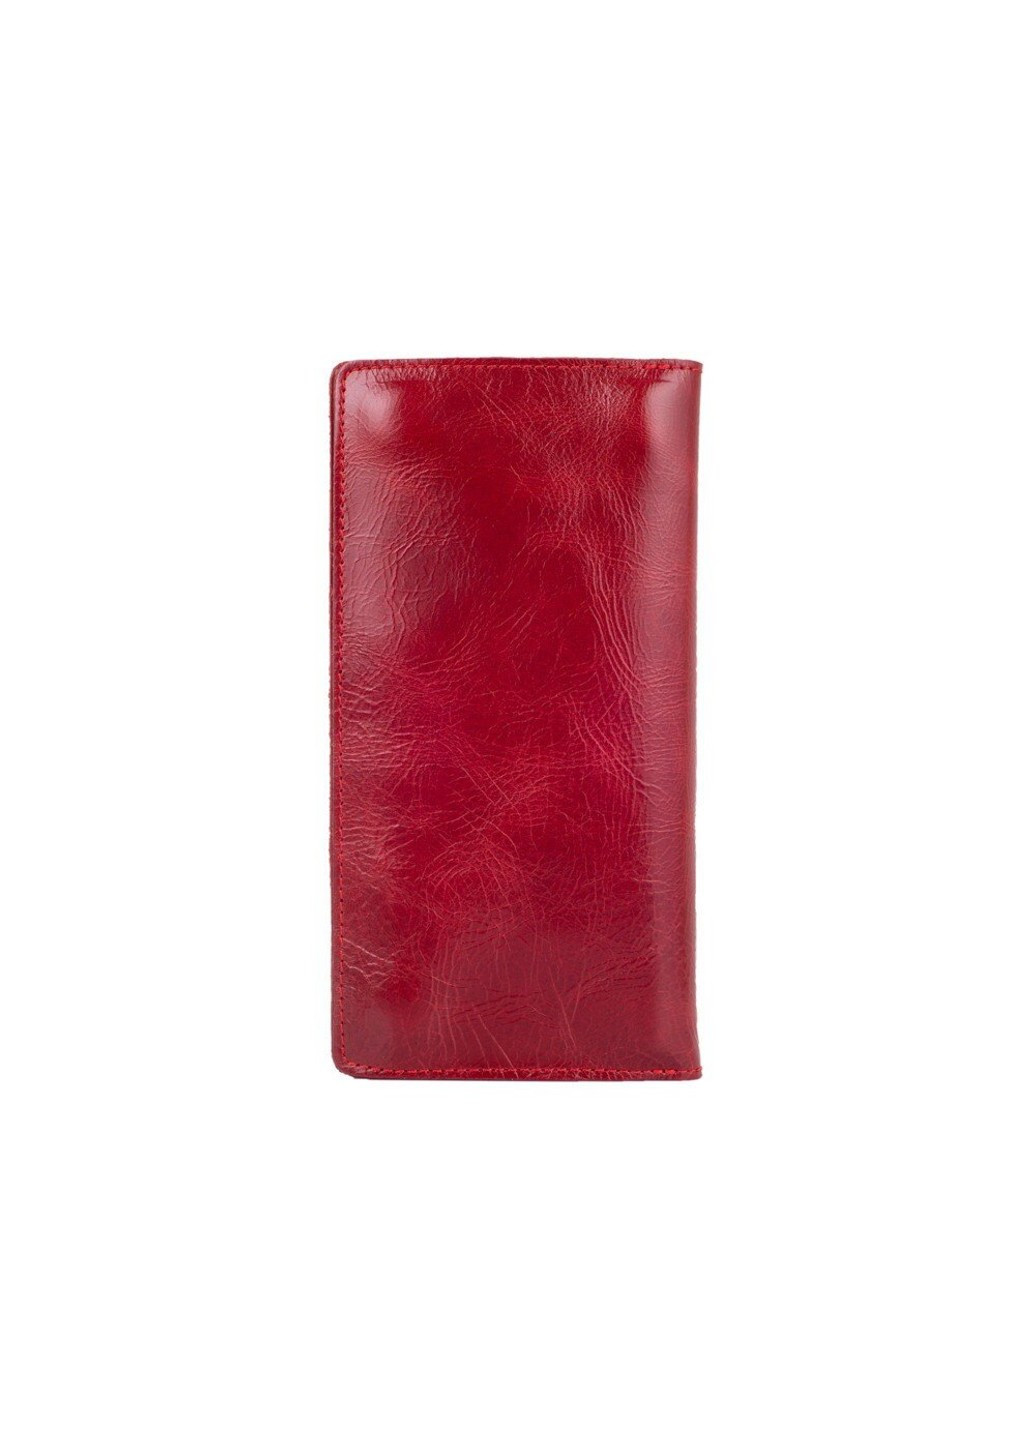 Кожаный бумажник WP-05 Mehendi Classic красный Красный Hi Art (268371503)